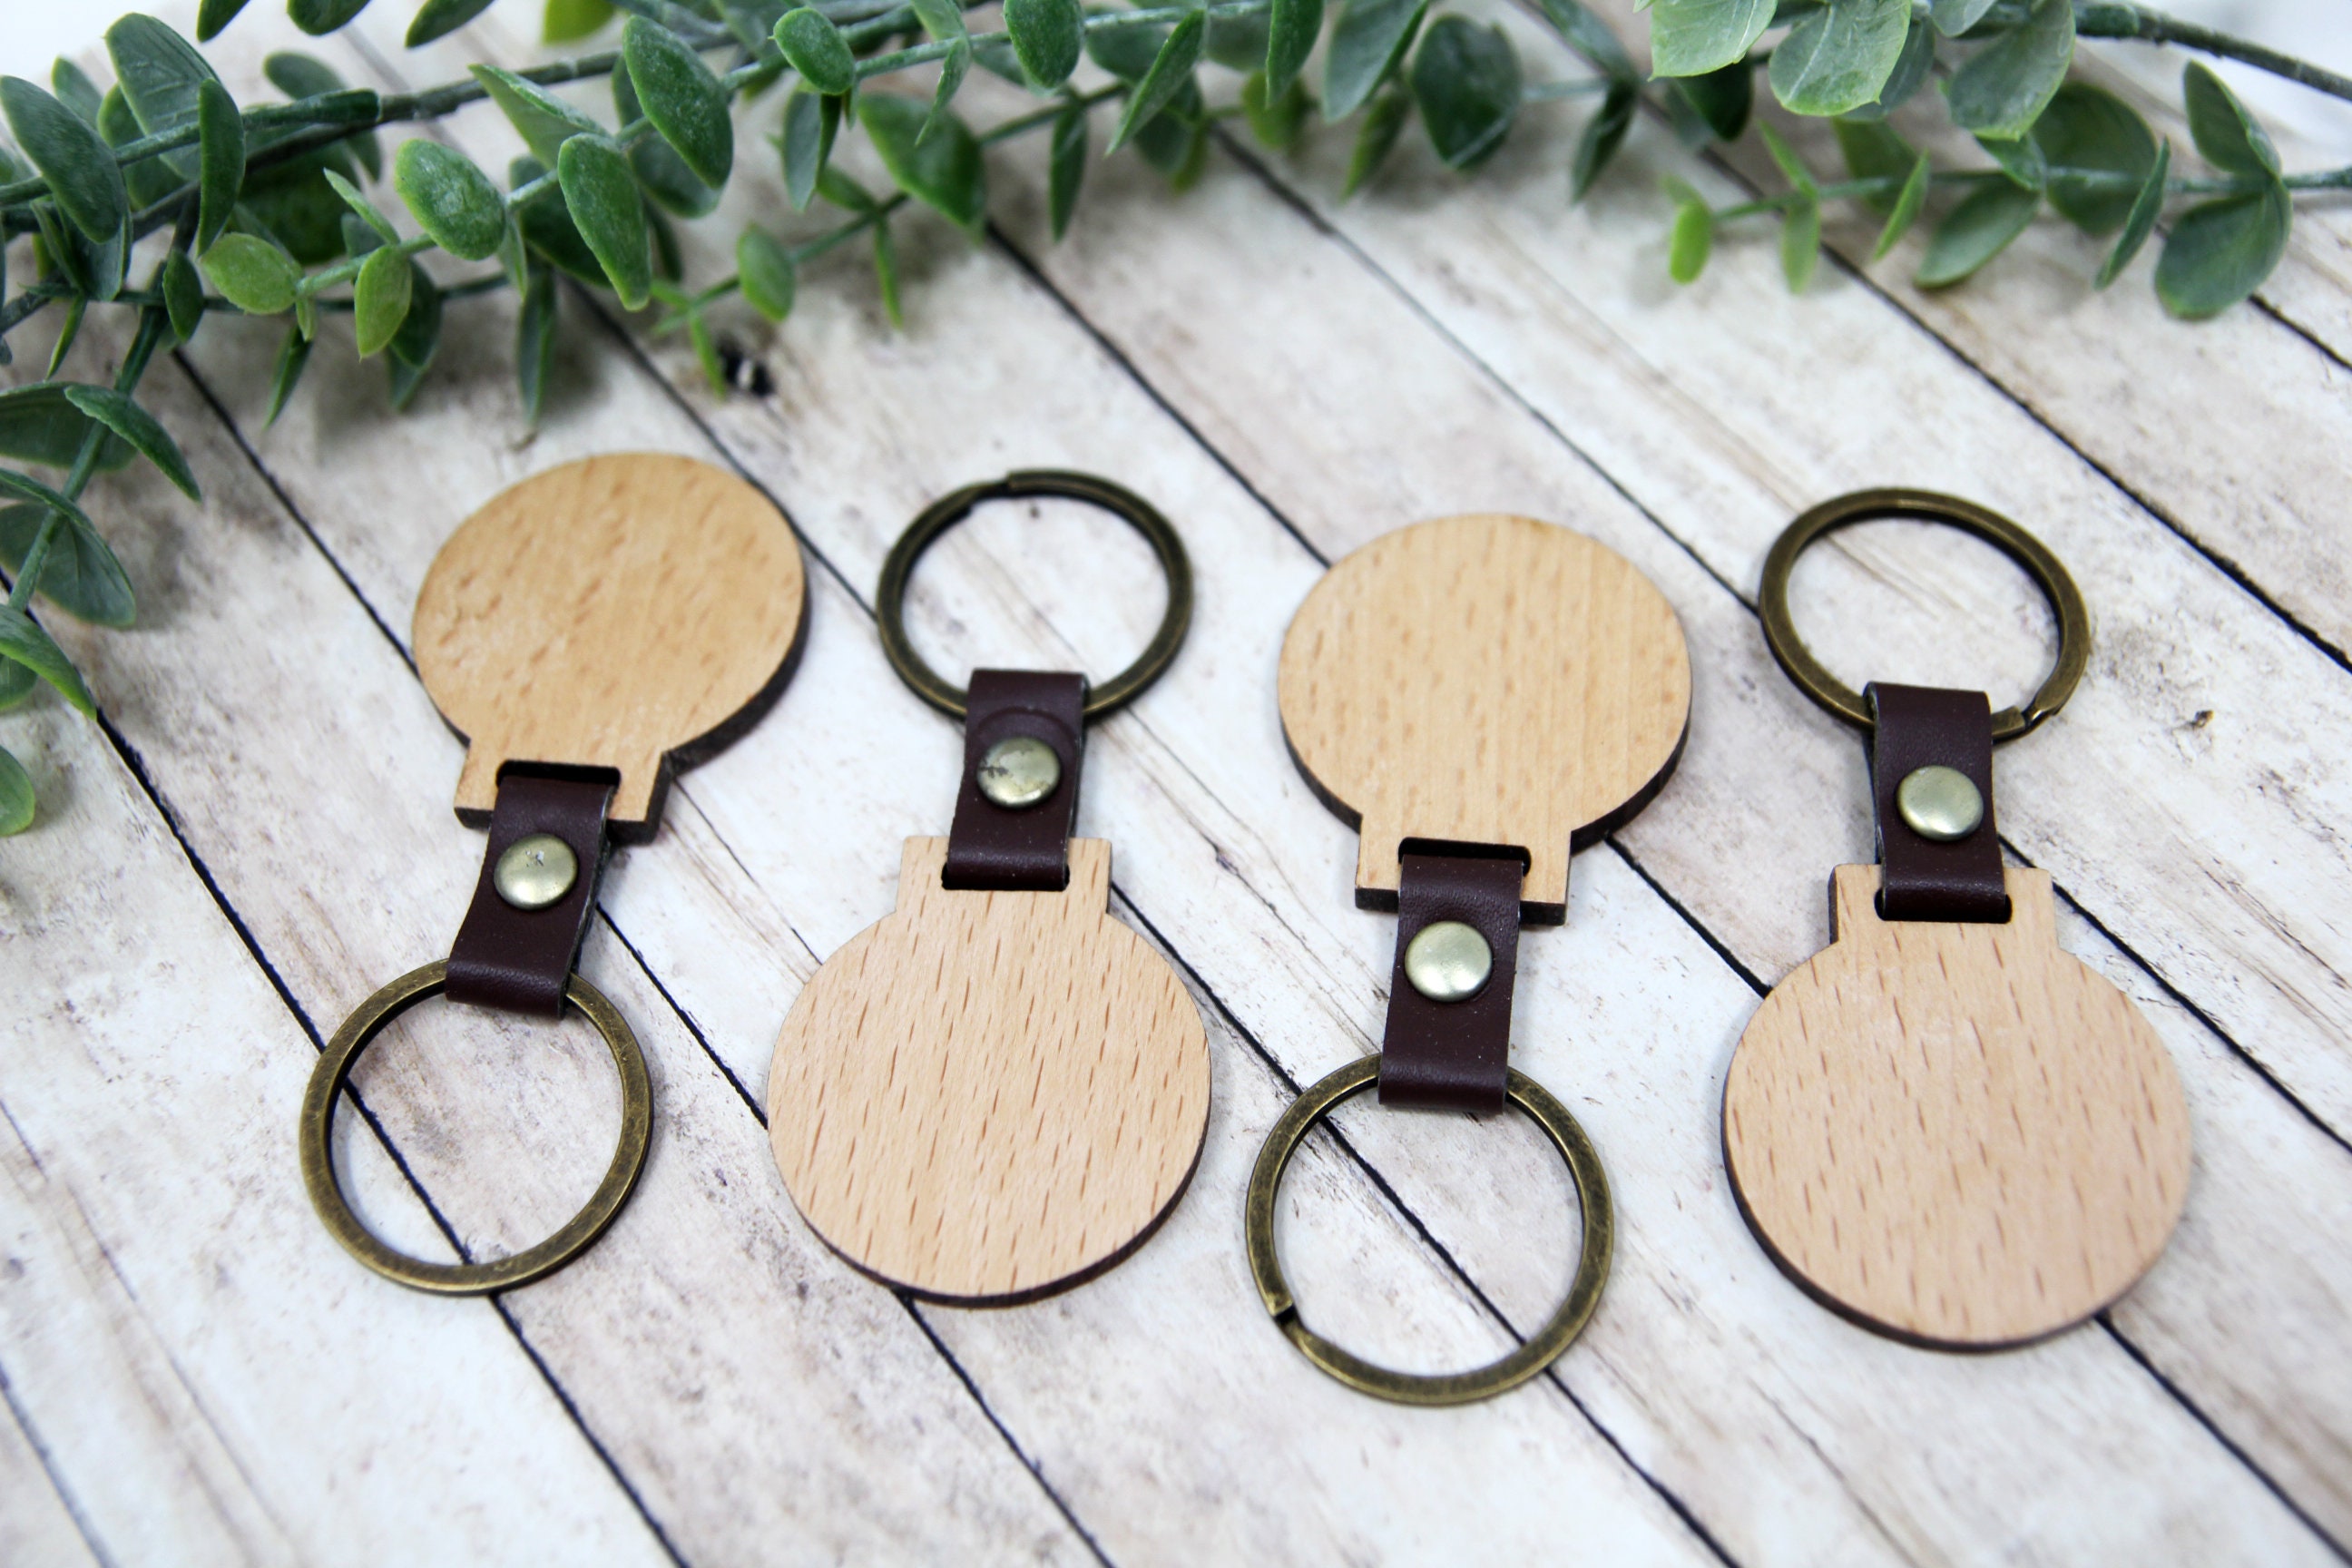 Wood Keychain Blank Personalized Wood Keychain Round Wood Keychain